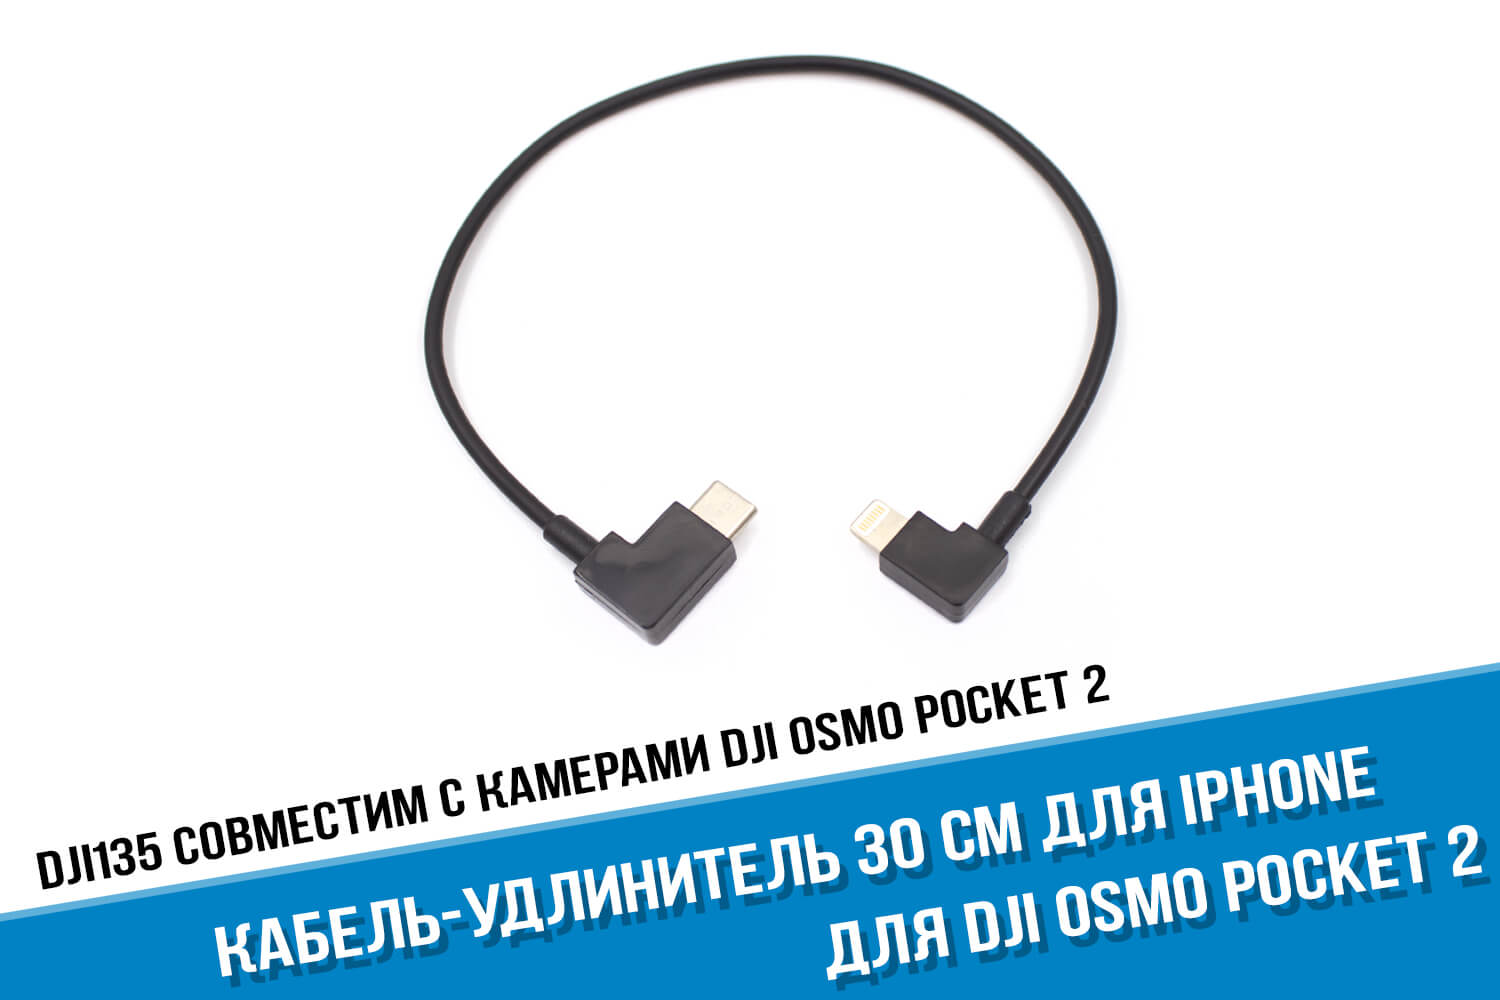 Кабель удлинитель 30 см удлинитель для DJI Osmo Pocket Type-C iPhone Lightning